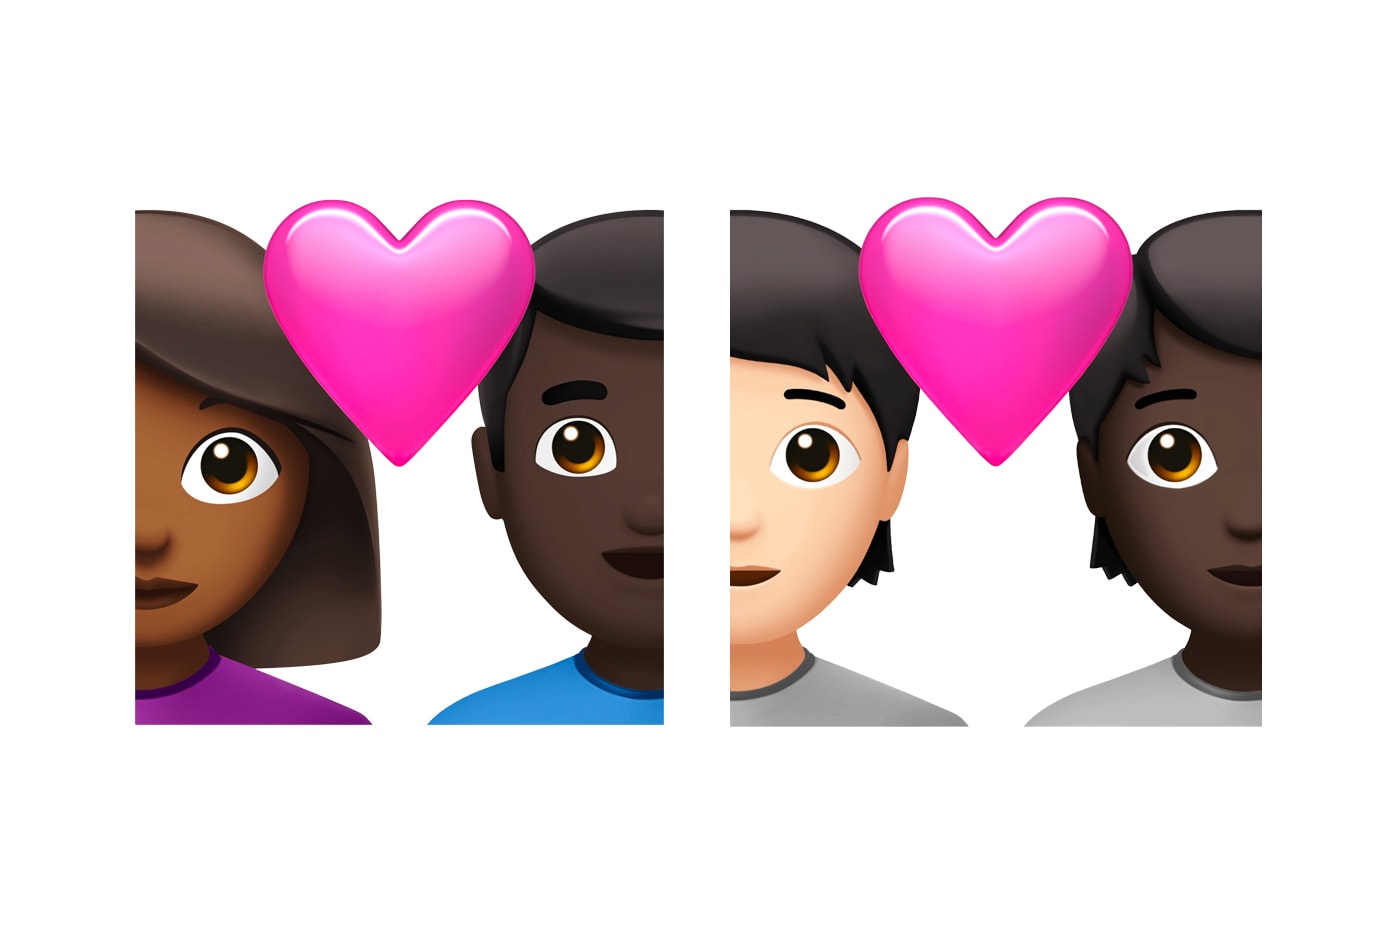 アップルがiOS 14.5で配布予定の絵文字を公開 New Apple iOS 14.5 iPhone Emojis Reveal Info